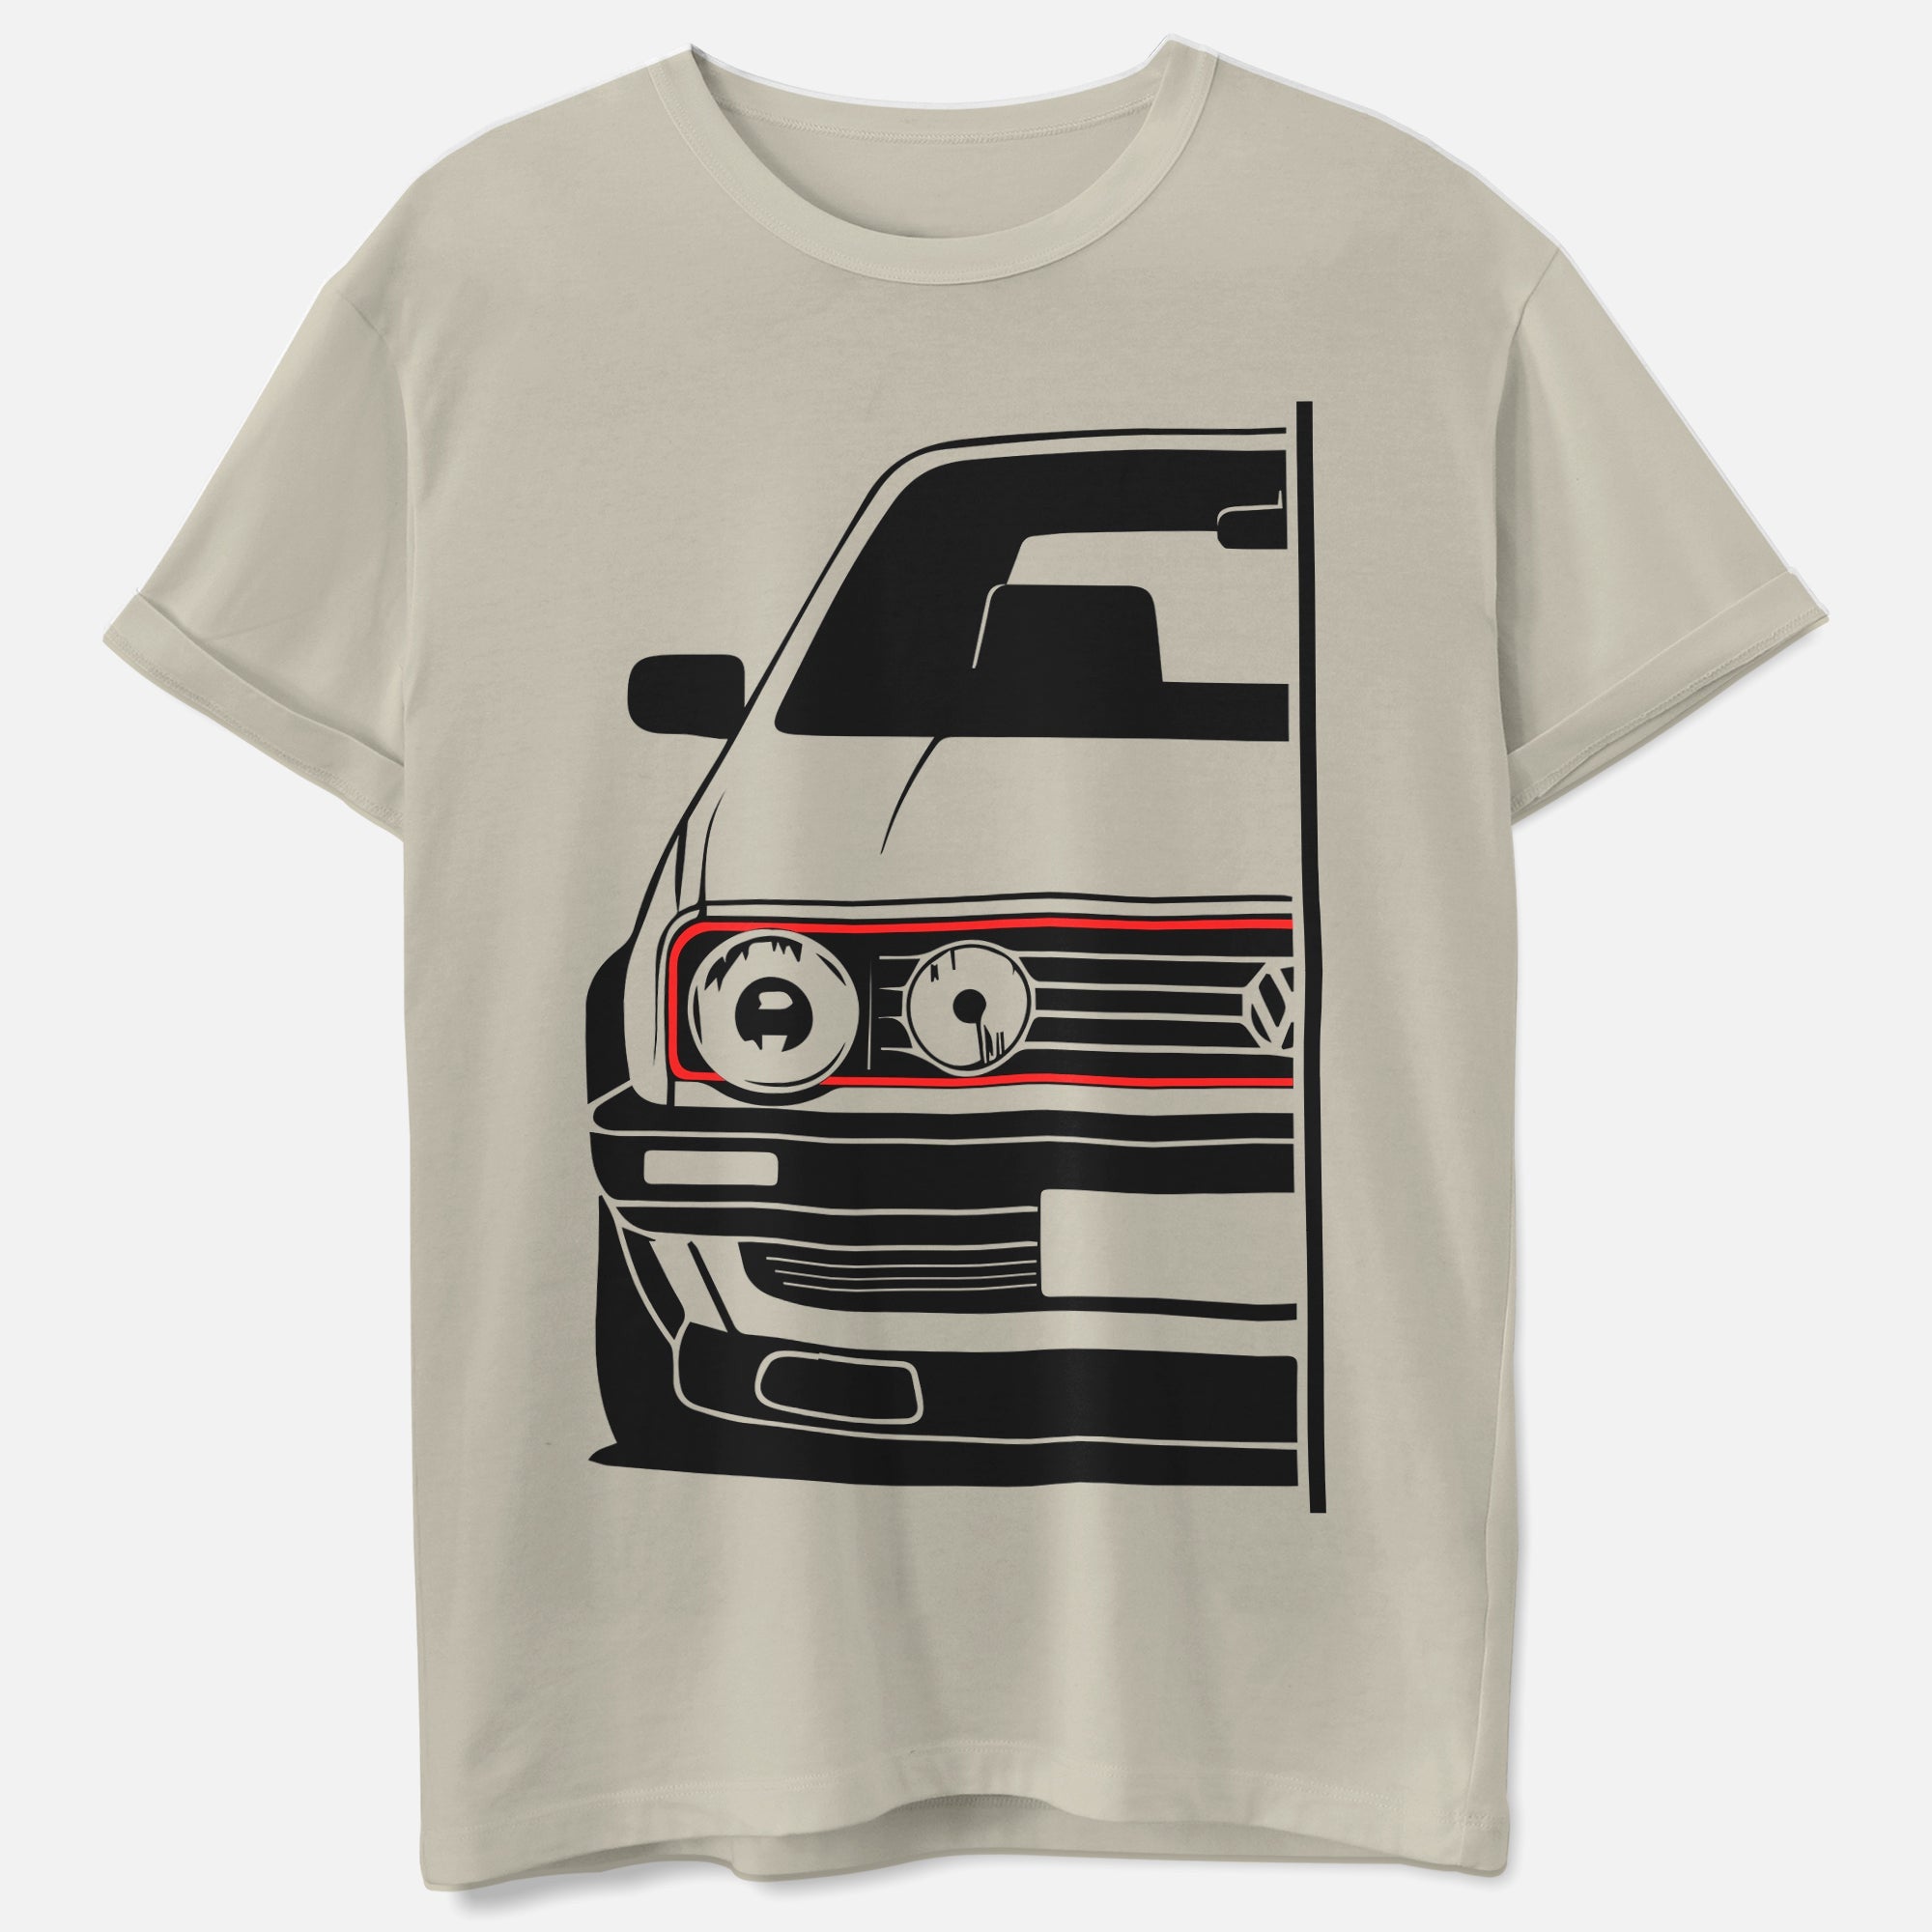 Golf MK2 GTI Shirt - Retro Auto - 90er Kult Auto - Geschenk Shirt